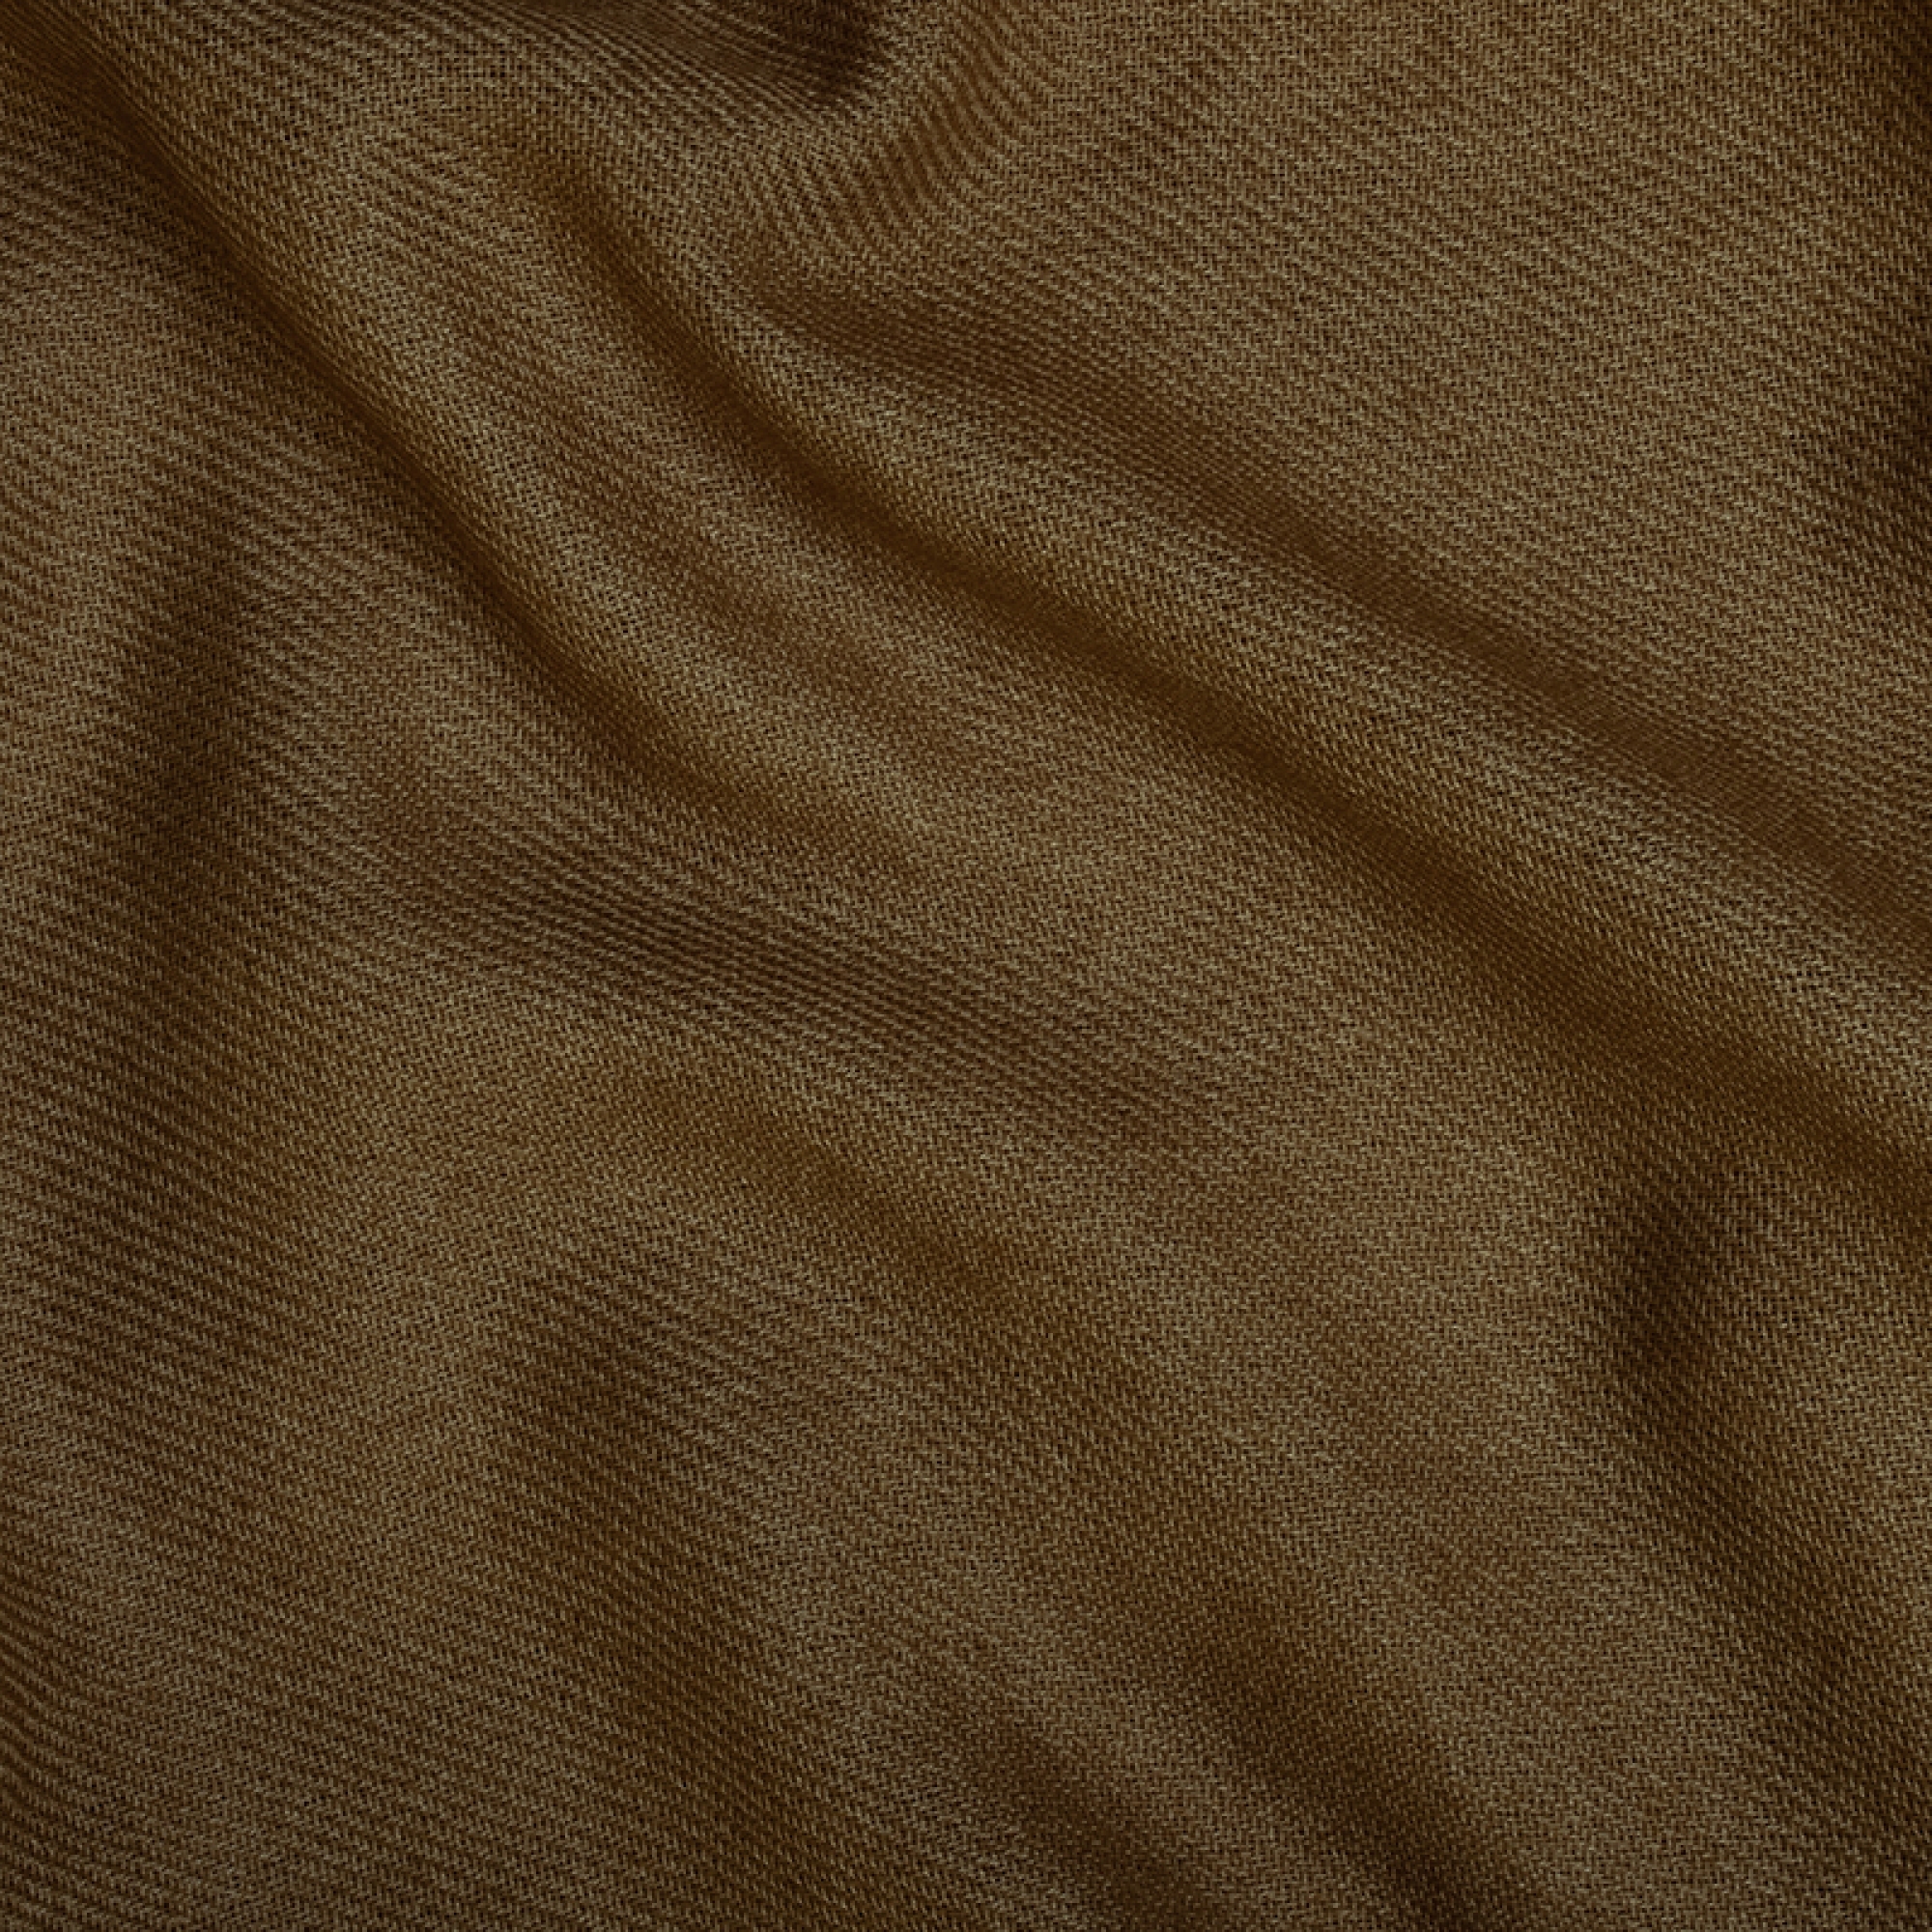 Cachemire accessoires couvertures plaids toodoo plain m 180 x 220 bronze 180 x 220 cm